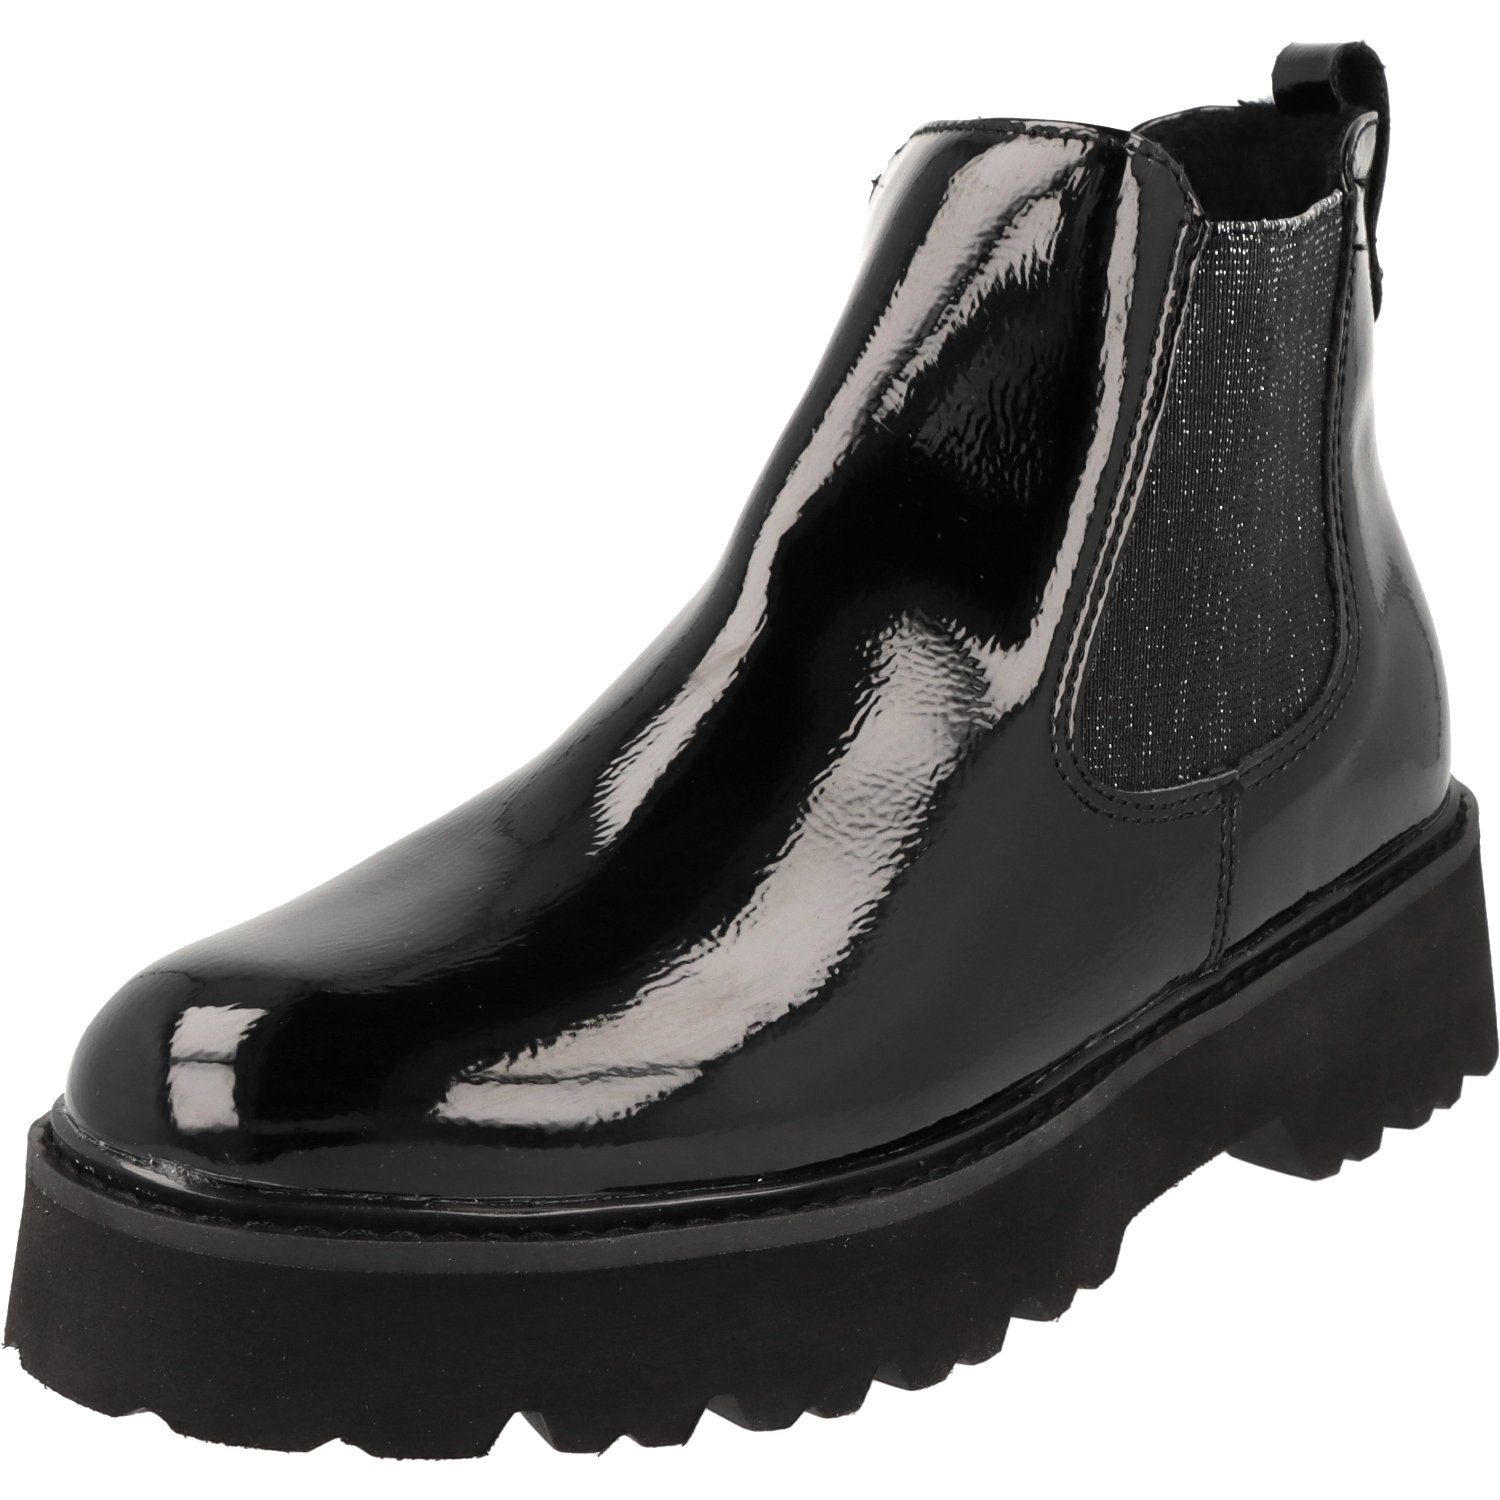 Jane Klain 254-498 Damen Schuhe Plateau Boots Stiefel Black Lack Chelseaboots